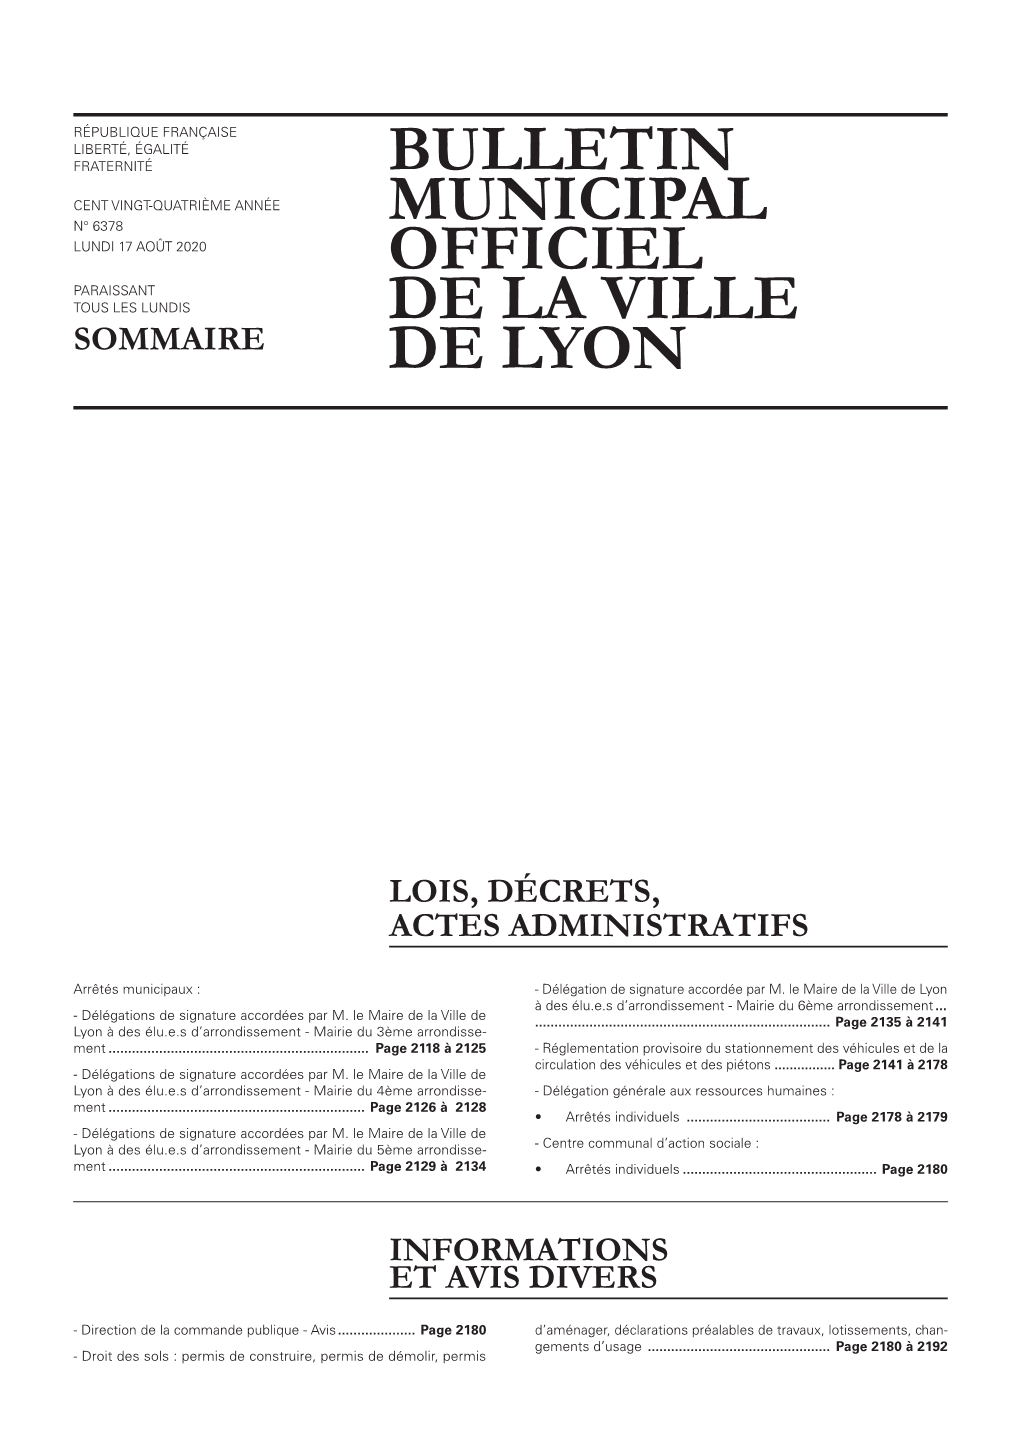 BULLETIN MUNICIPAL OFFICIEL DE LA VILLE DE LYON 17 Août 2020 LOIS, DÉCRETS, ACTES ADMINISTRATIFS